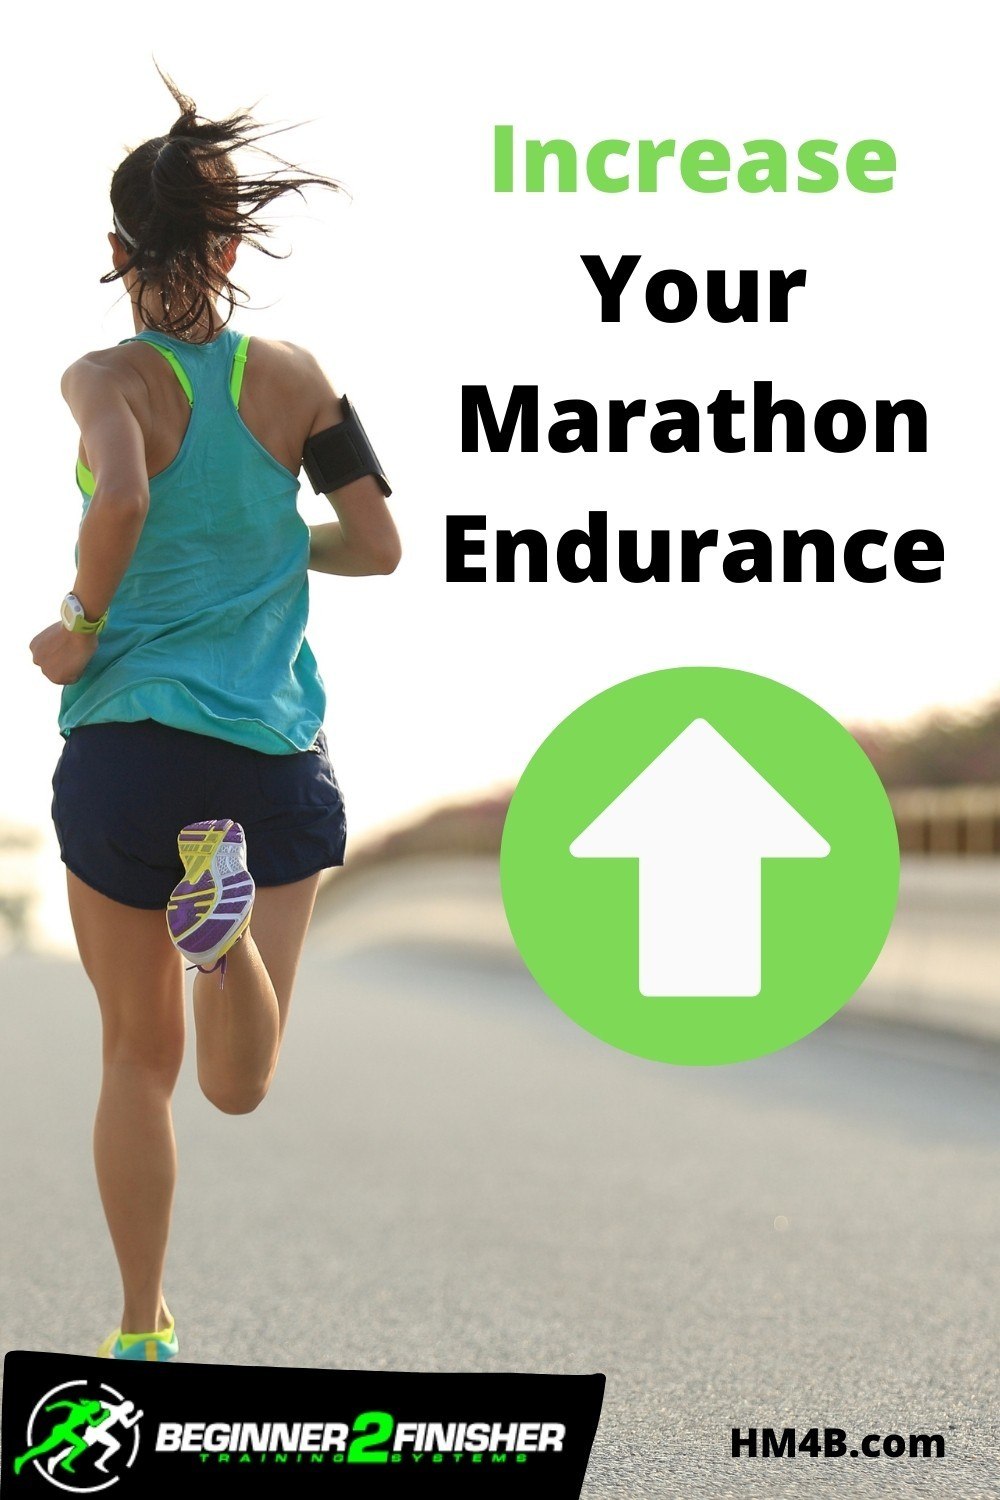 How do I Increase my Endurance for a Marathon Race?